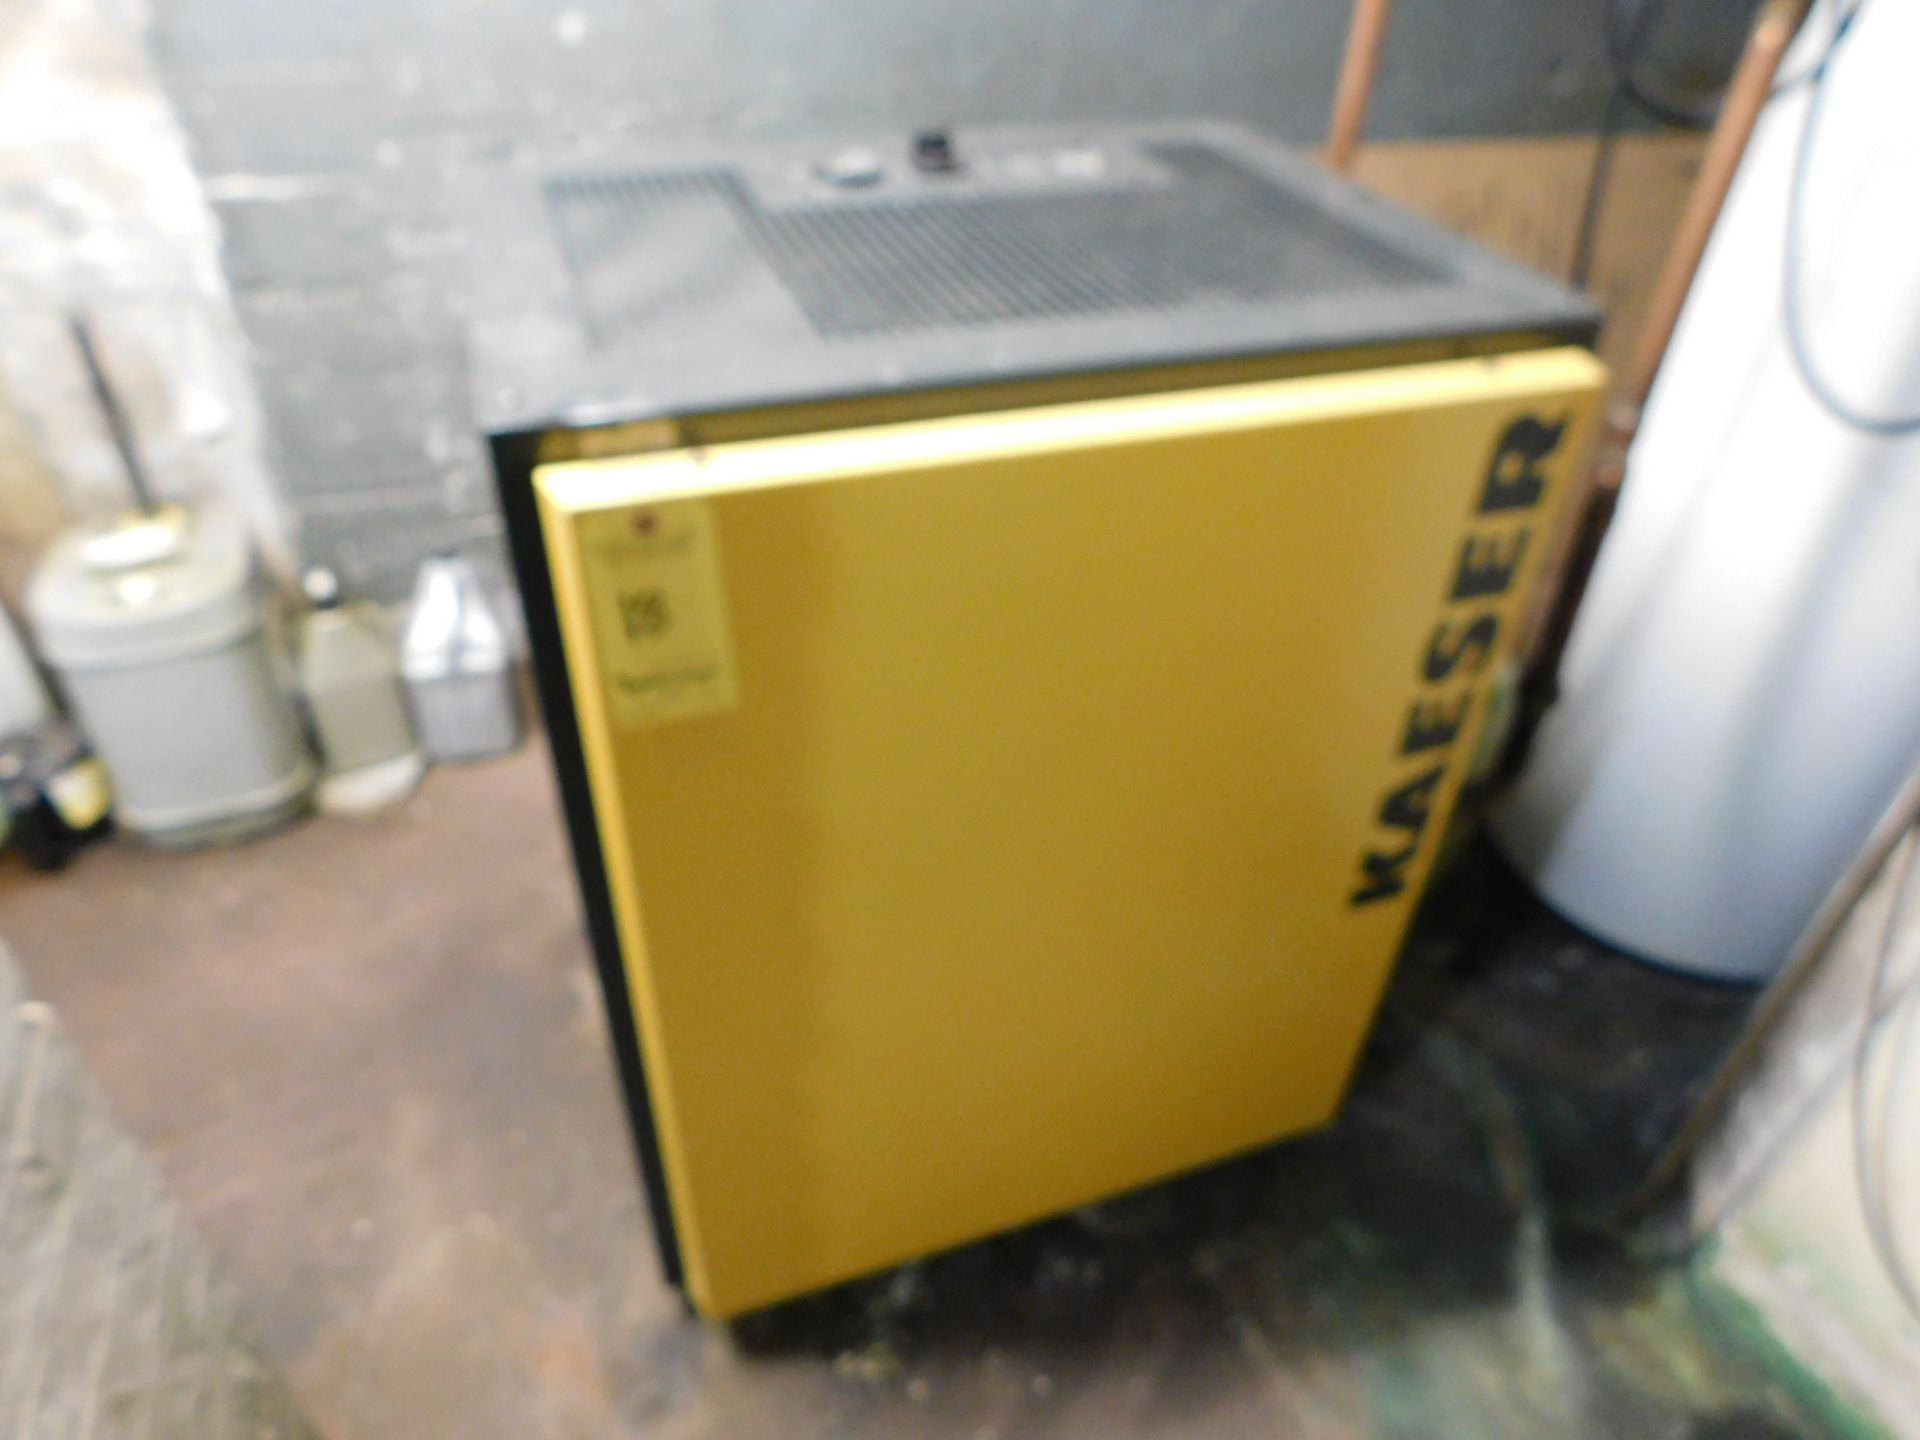 Kaeser Model TC 31 Air Dryer, SN 1987, new in 2018